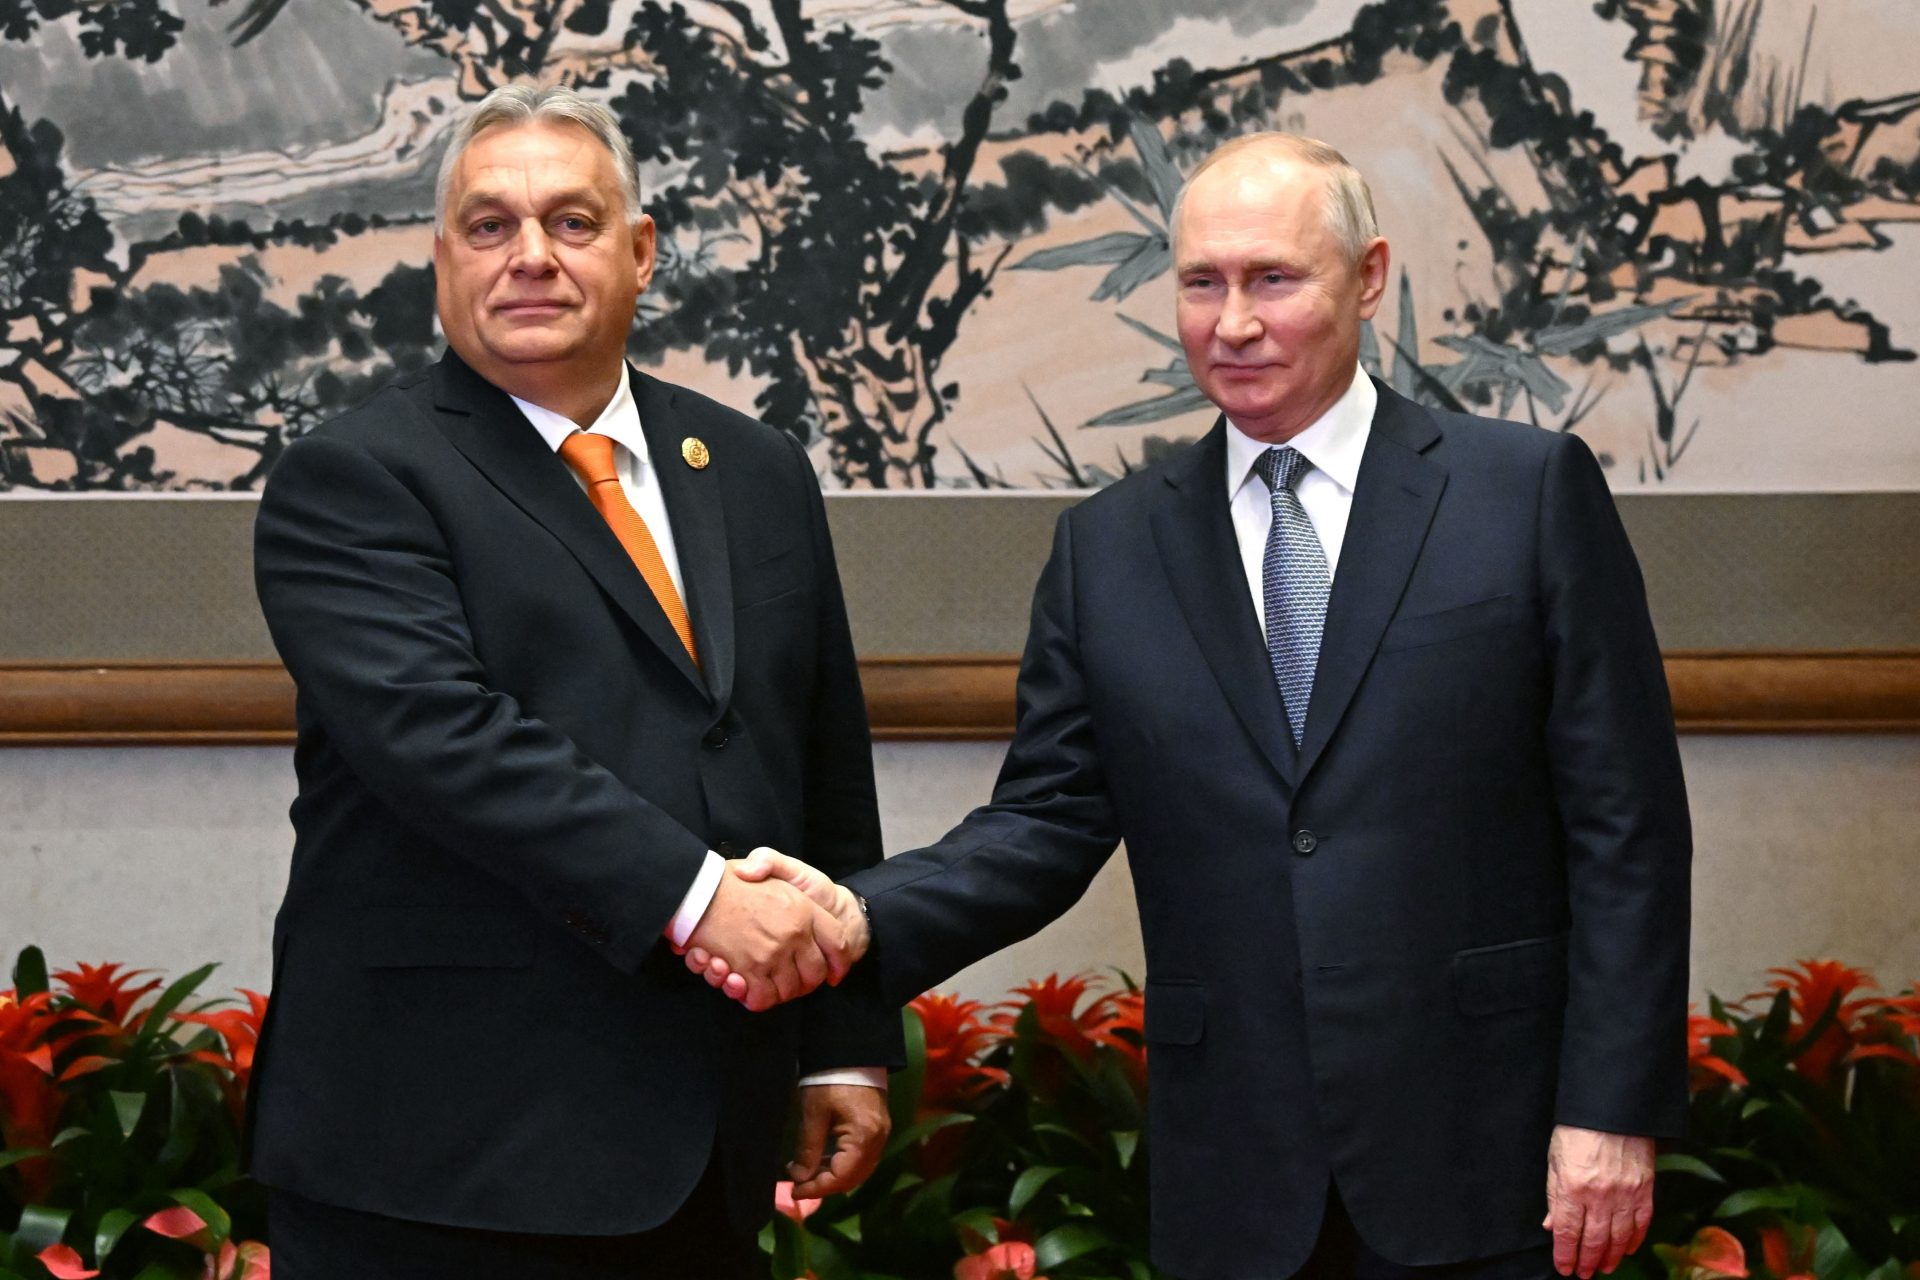 Putin erringt beim Fototermin mit Viktor Orbán einen großen politischen Sieg